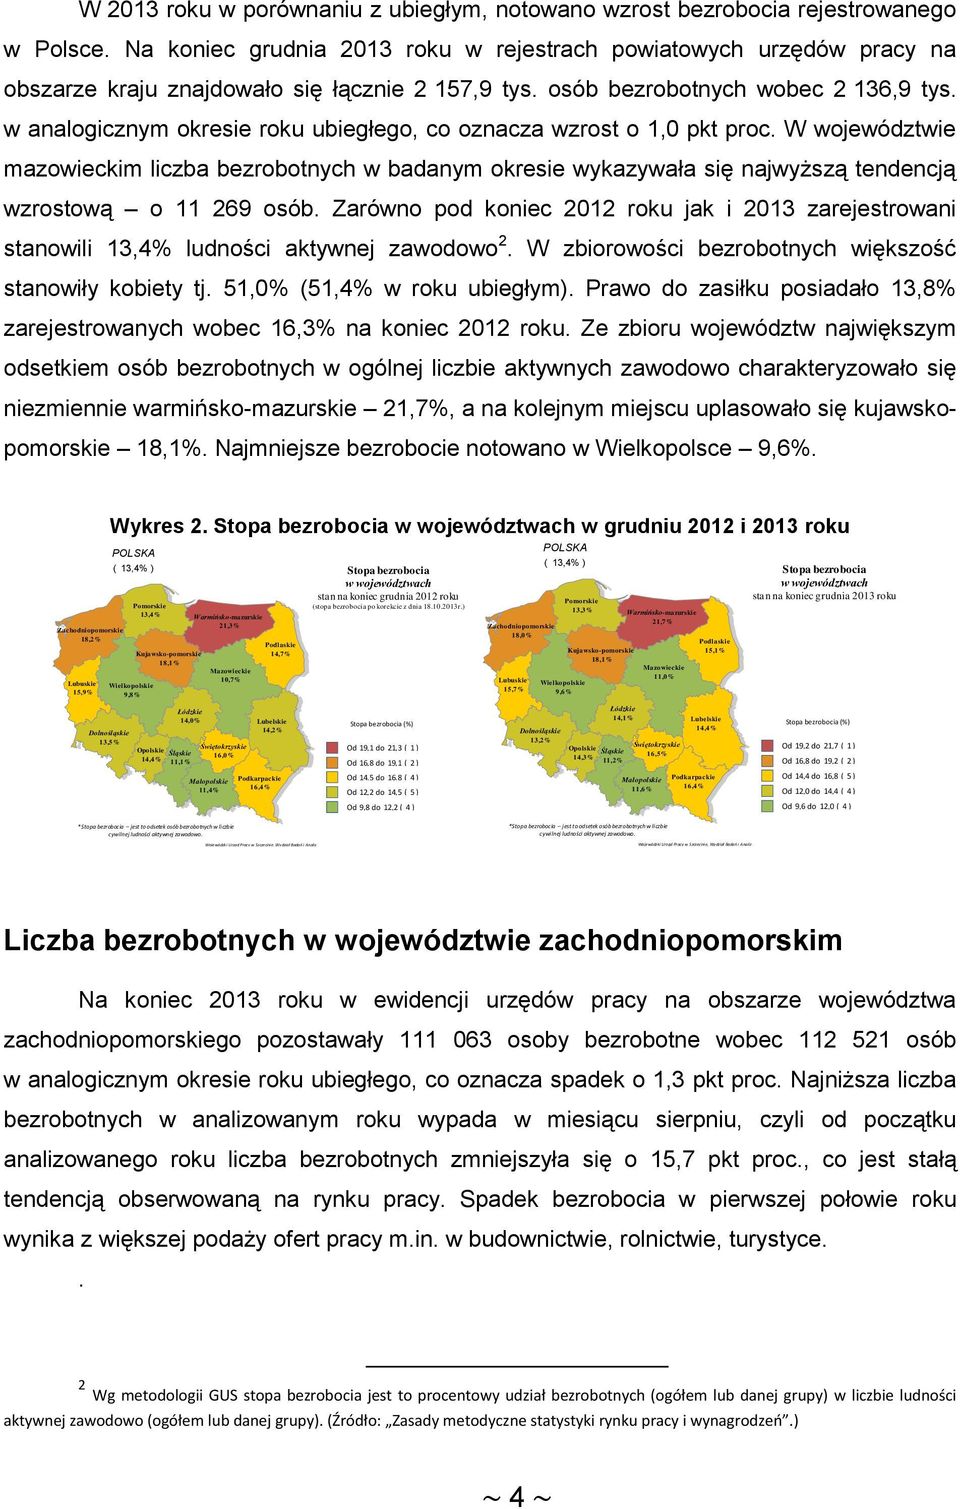 w analogicznym okresie roku ubiegłego, co oznacza wzrost o 1, pkt proc. W województwie mazowieckim liczba bezrobotnych w badanym okresie wykazywała się najwyższą tendencją wzrostową o 11 269 osób.